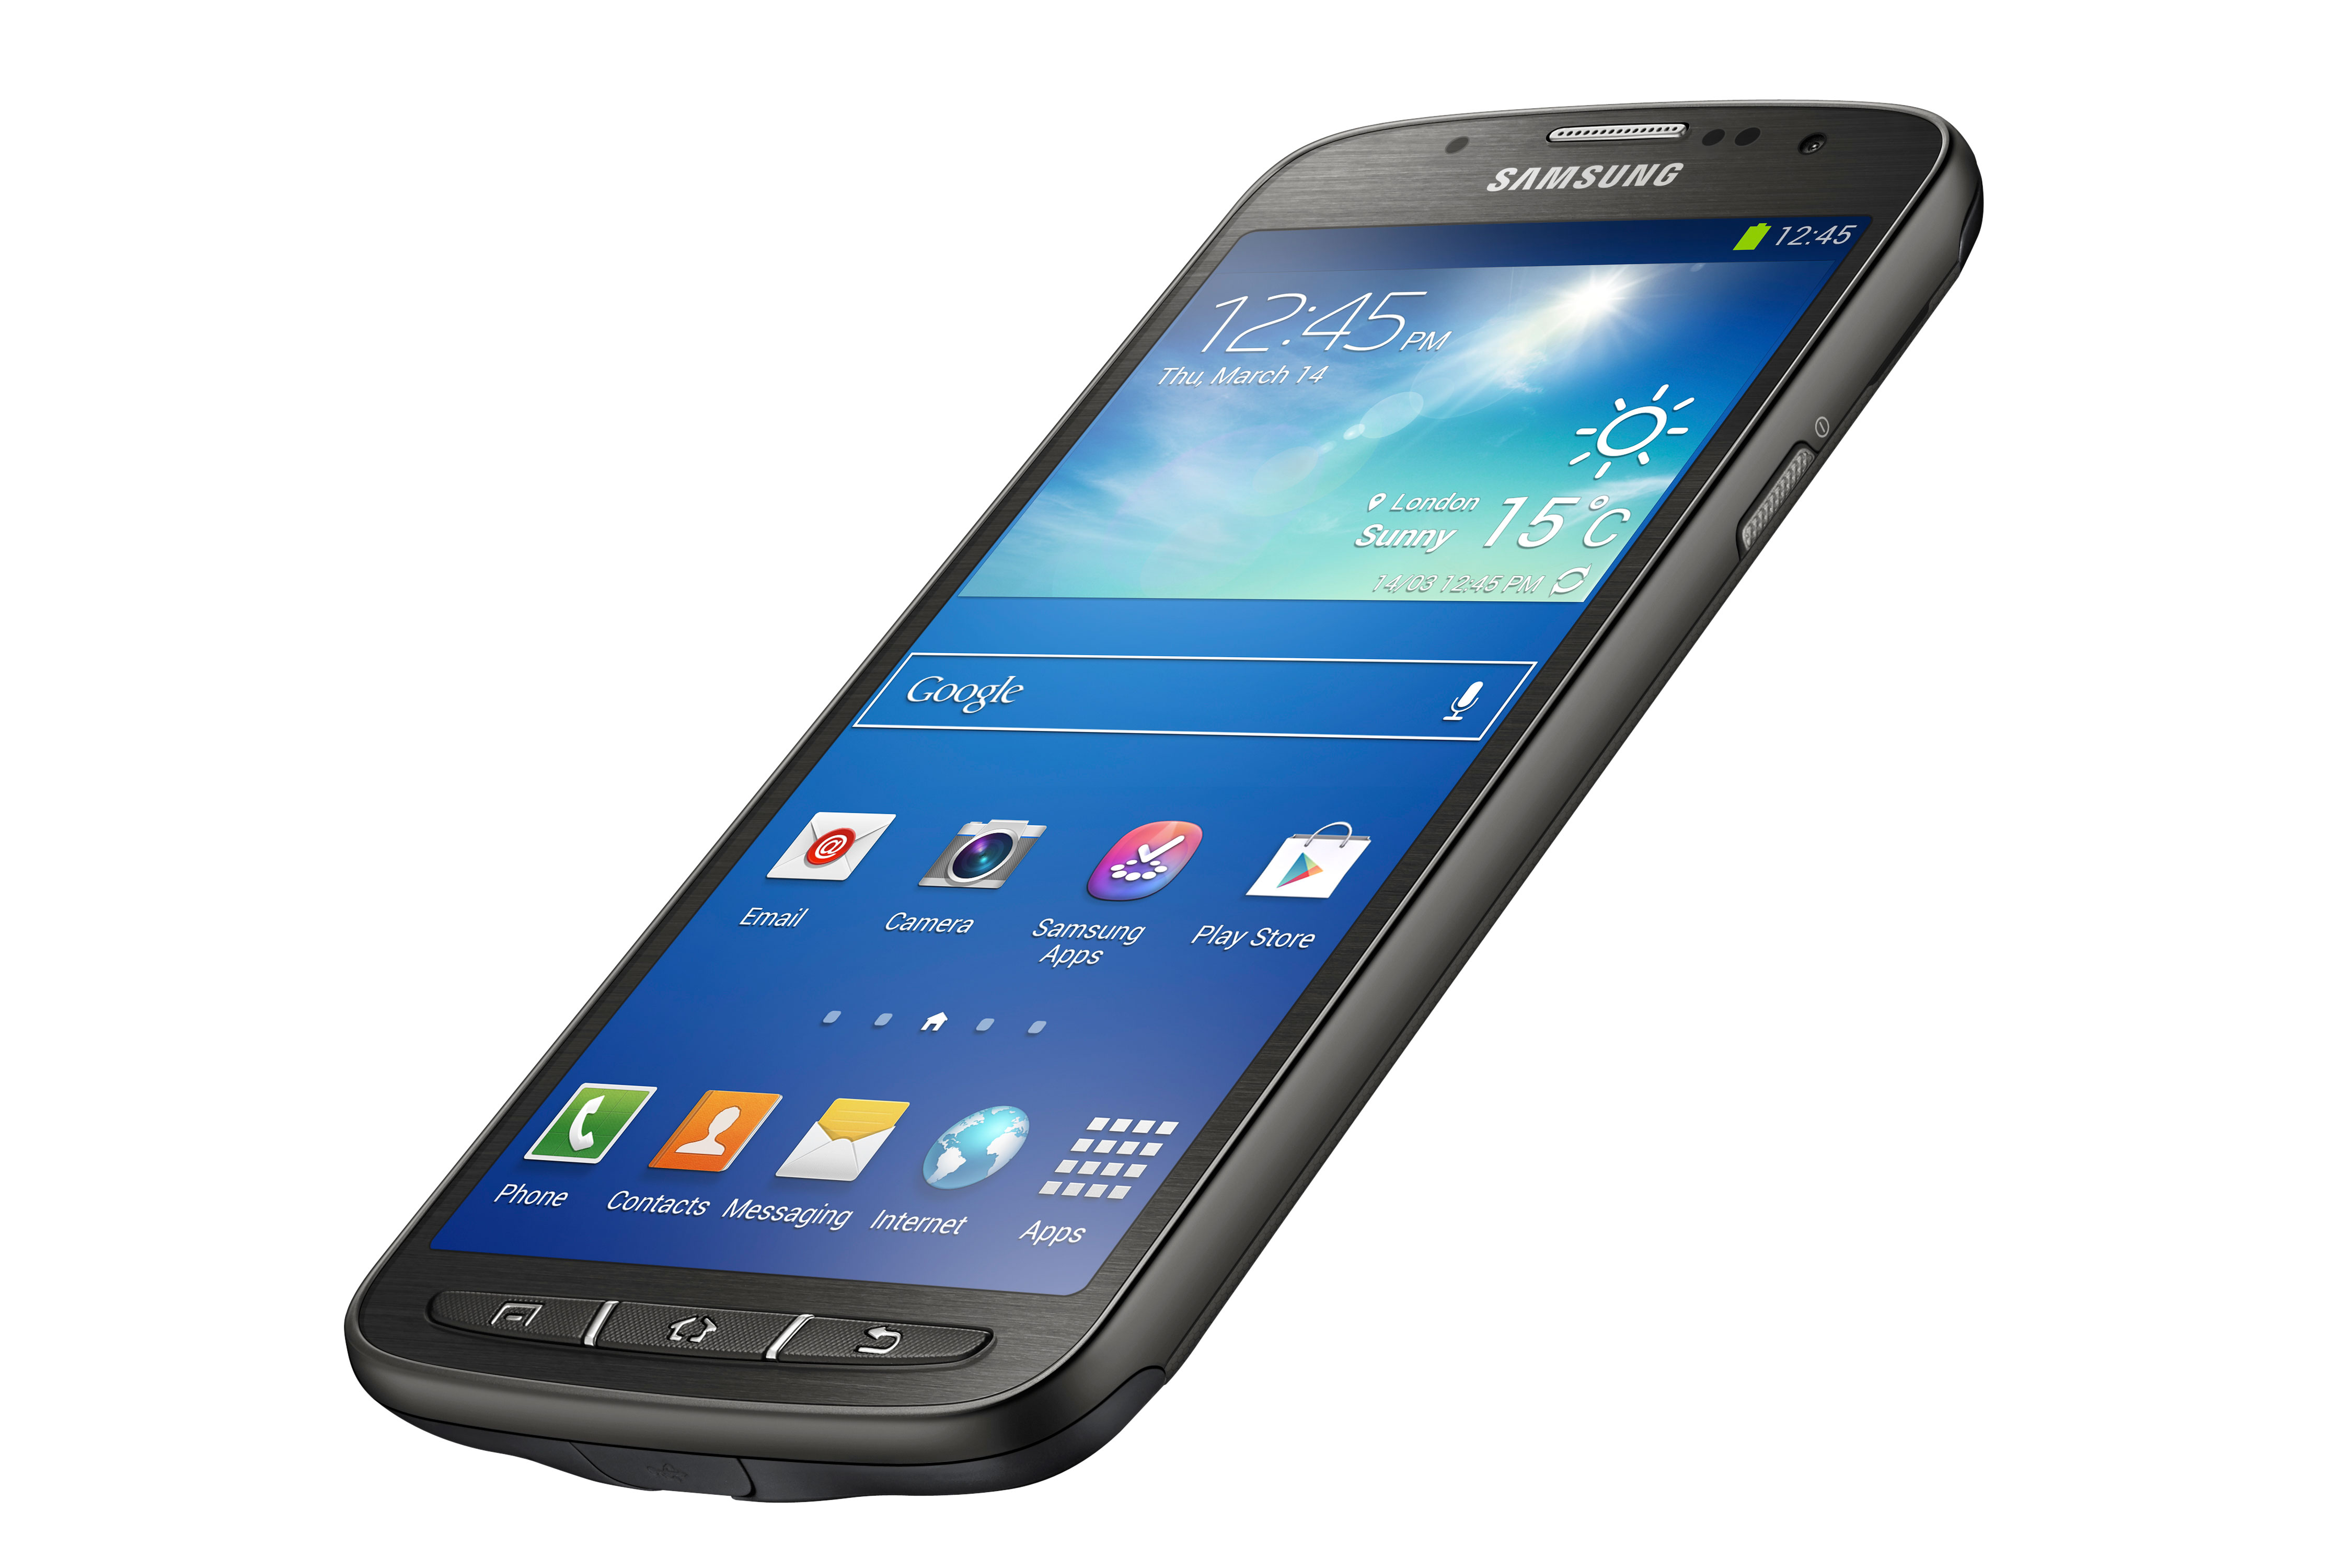 Samsung Galaxy S4 Active 